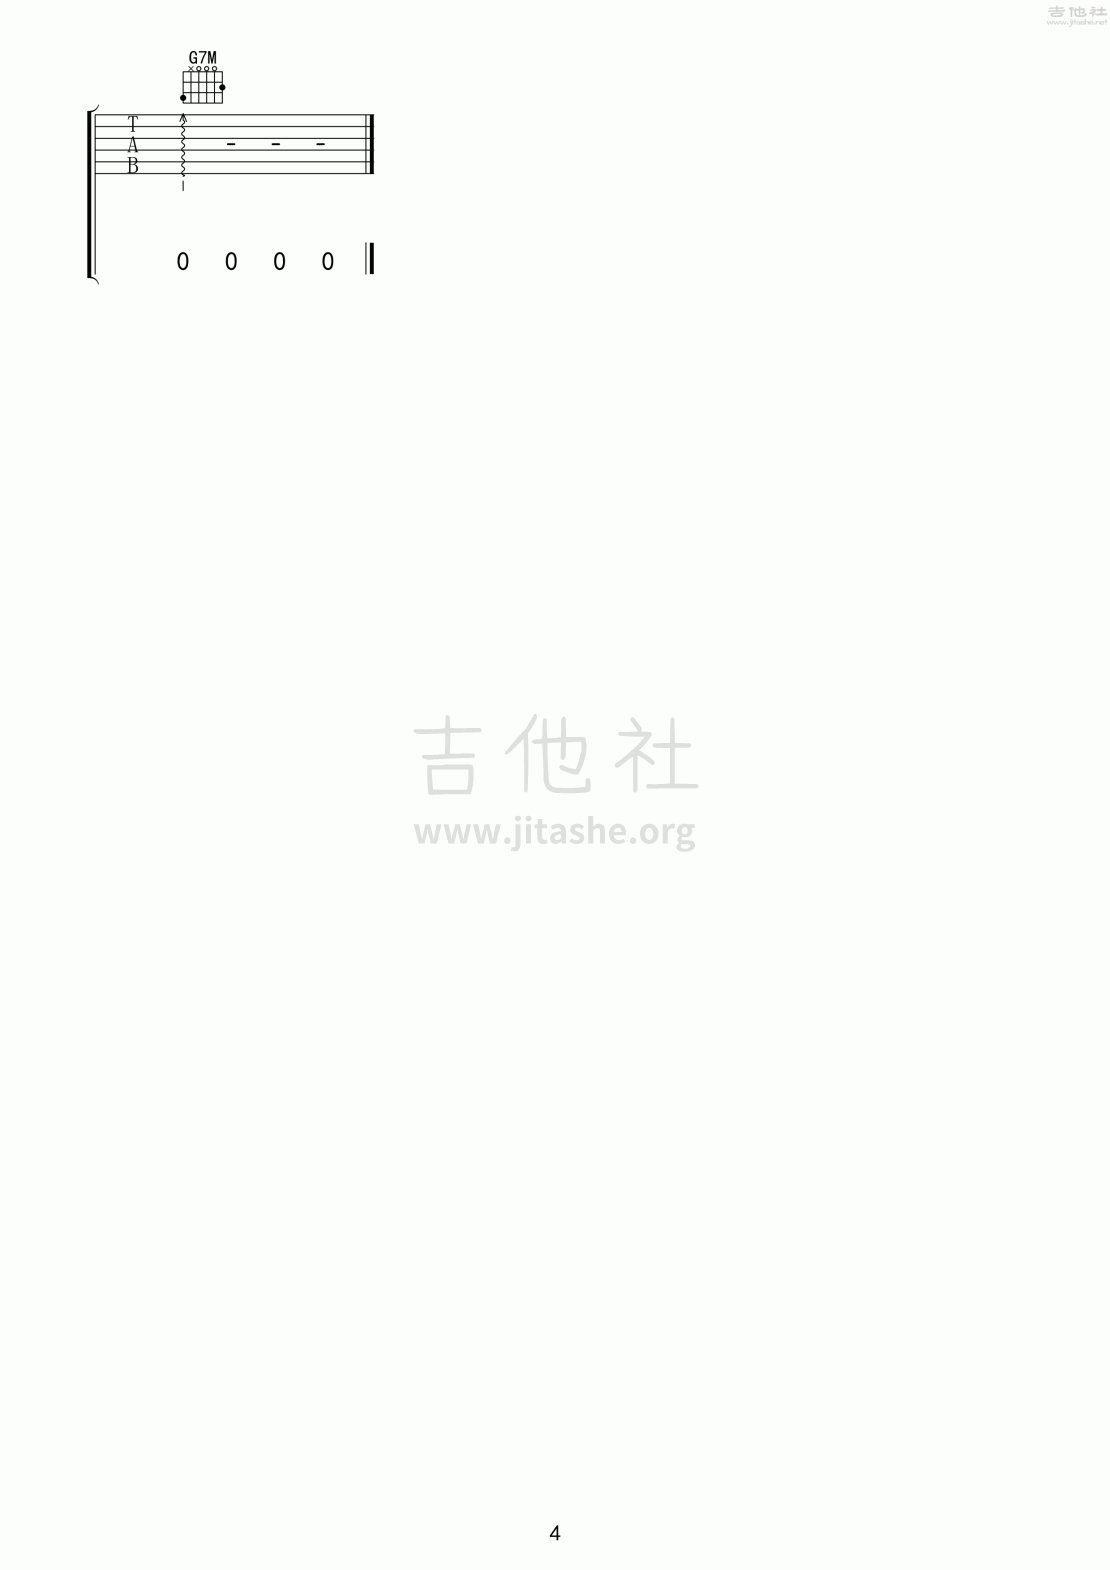 情难枕(99演唱会超原版)吉他谱(图片谱,弹唱,现场版)_小虎队_情难枕4.gif